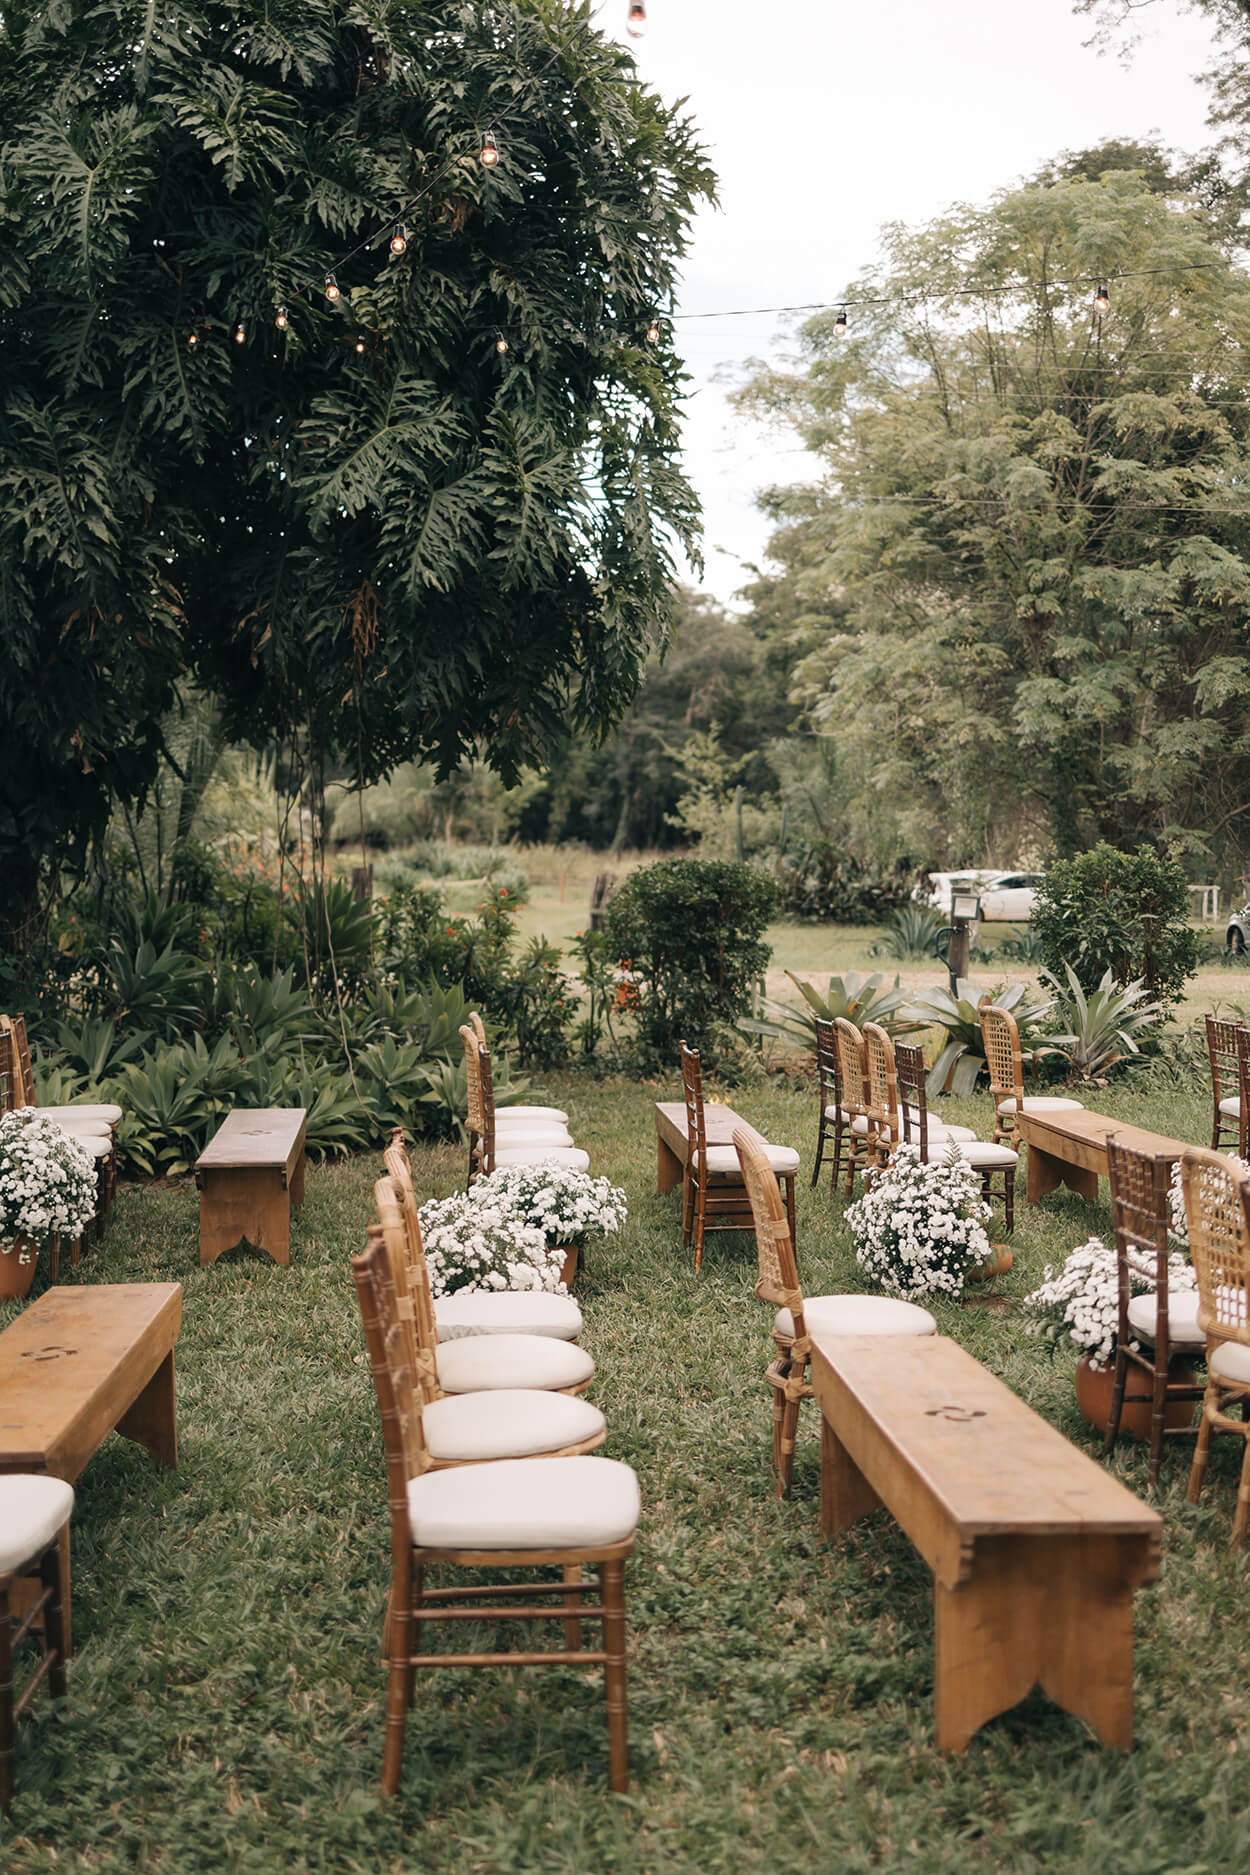 cadeiras tiffany e bancos de madeira com flores brancas no jardim